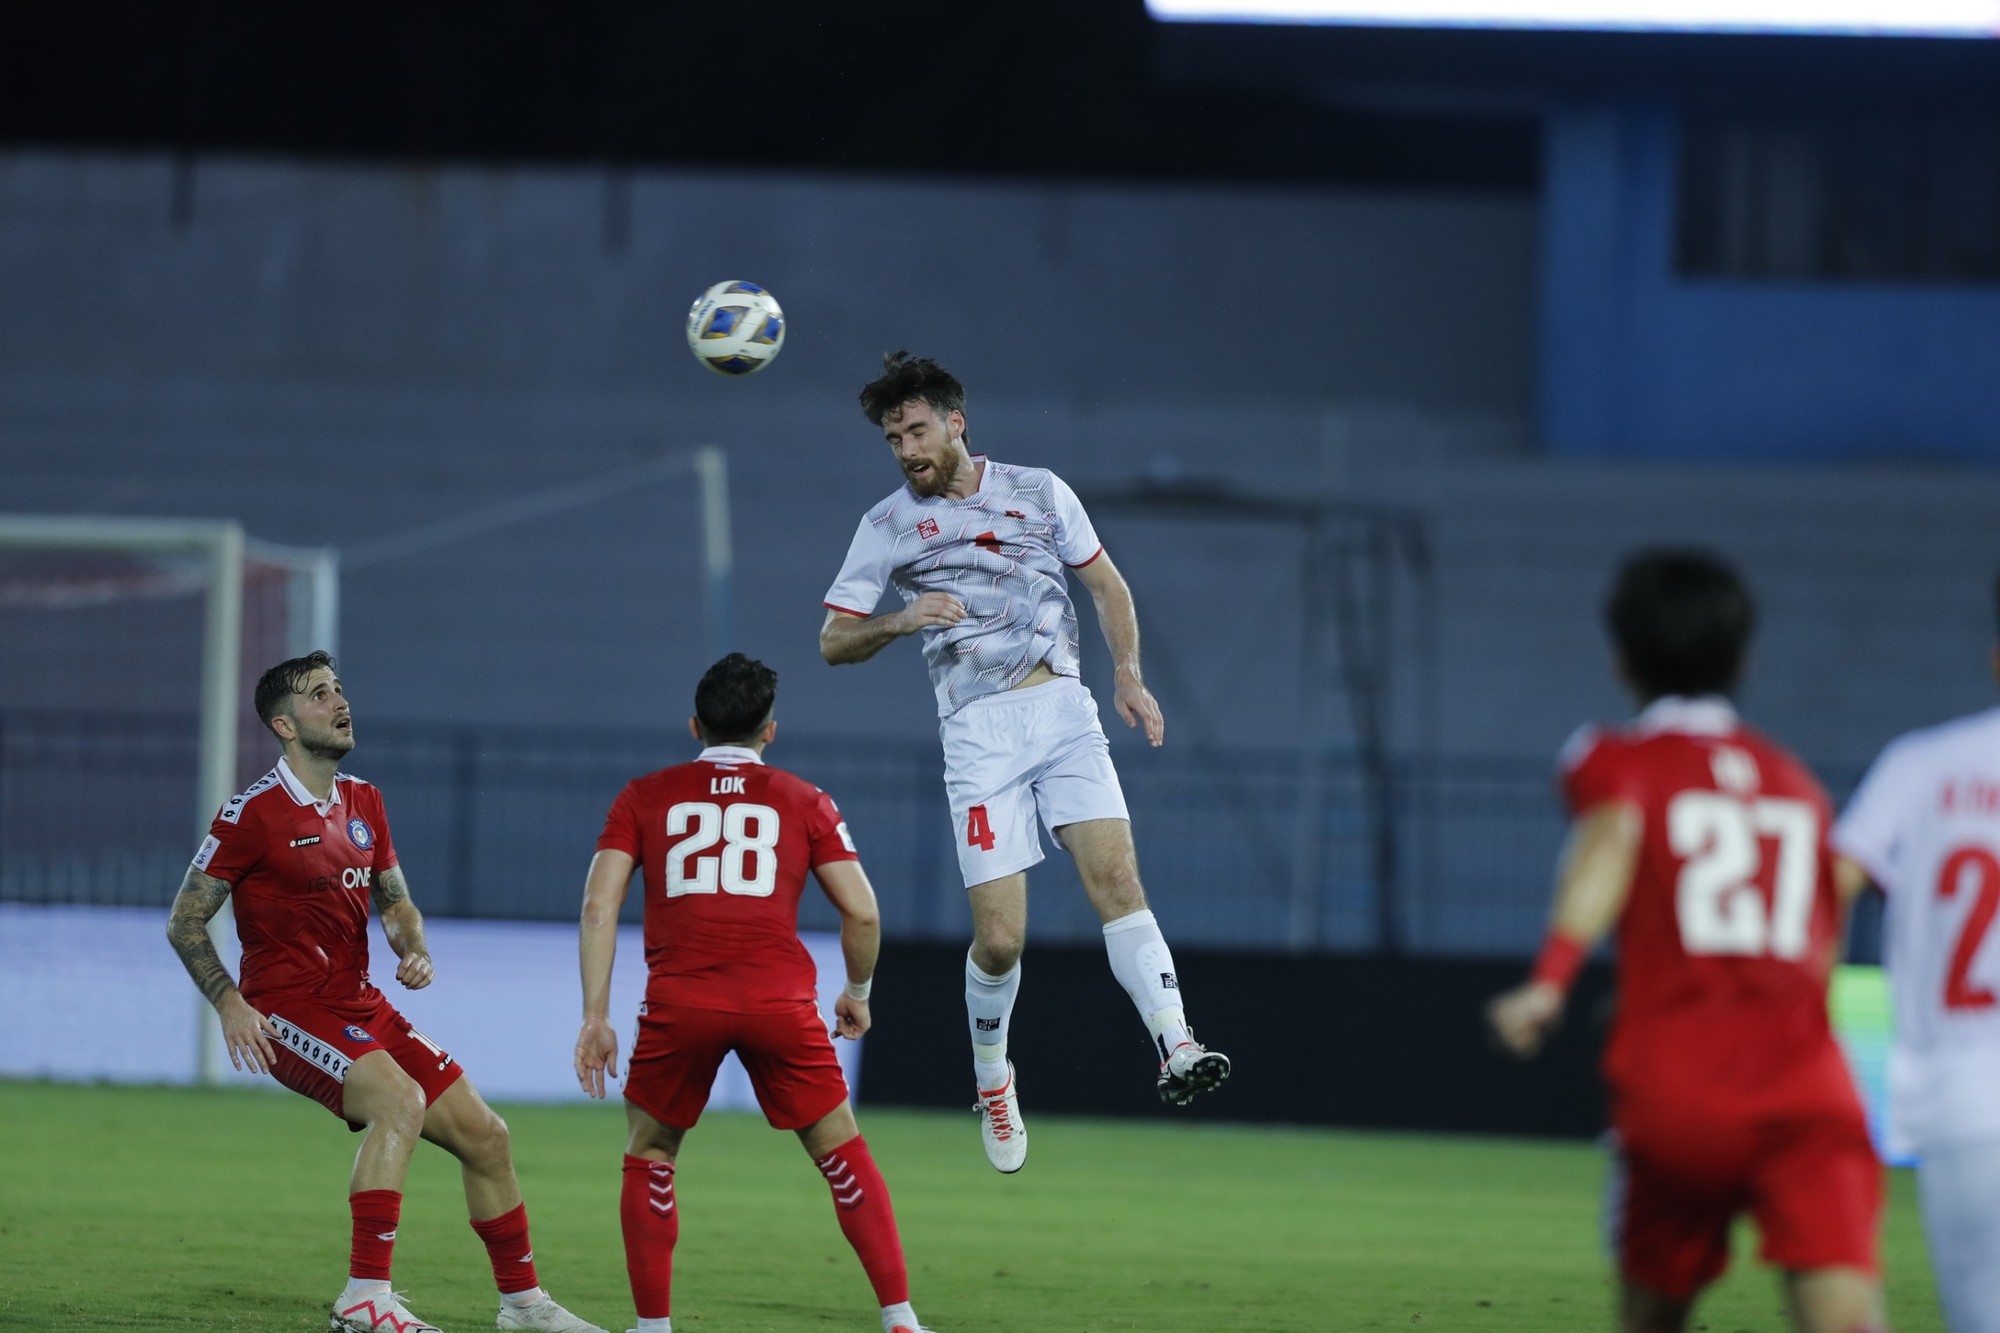 CLB Hải Phòng thắng nghẹt thở tại AFC Cup, thắp sáng hy vọng đi tiếp - Ảnh 3.